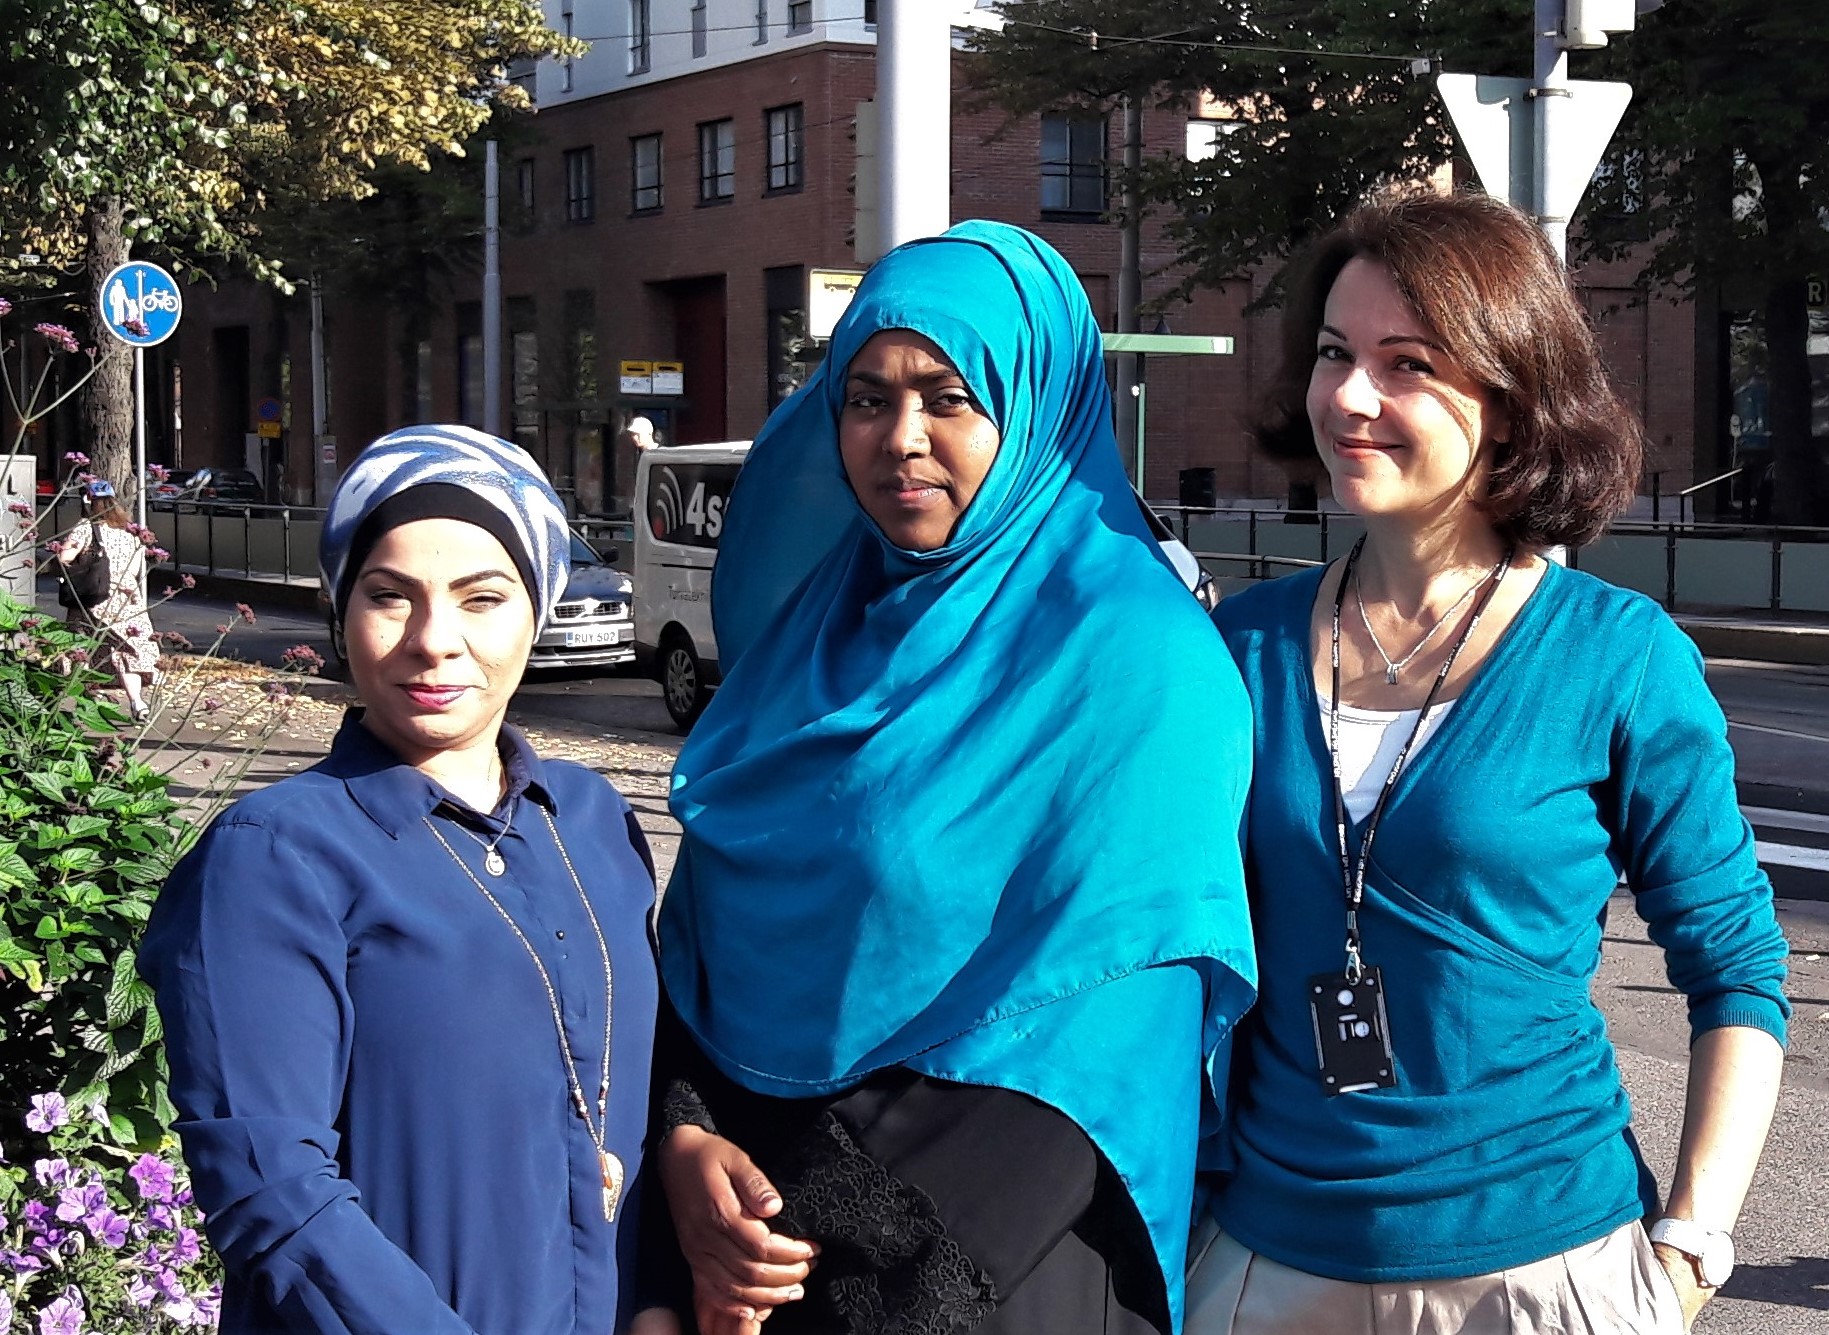 "Zainab Al-Ali, Suhuur Musse ja Marina Rinas seisovat rinnakkain, taustalla katumaisema."